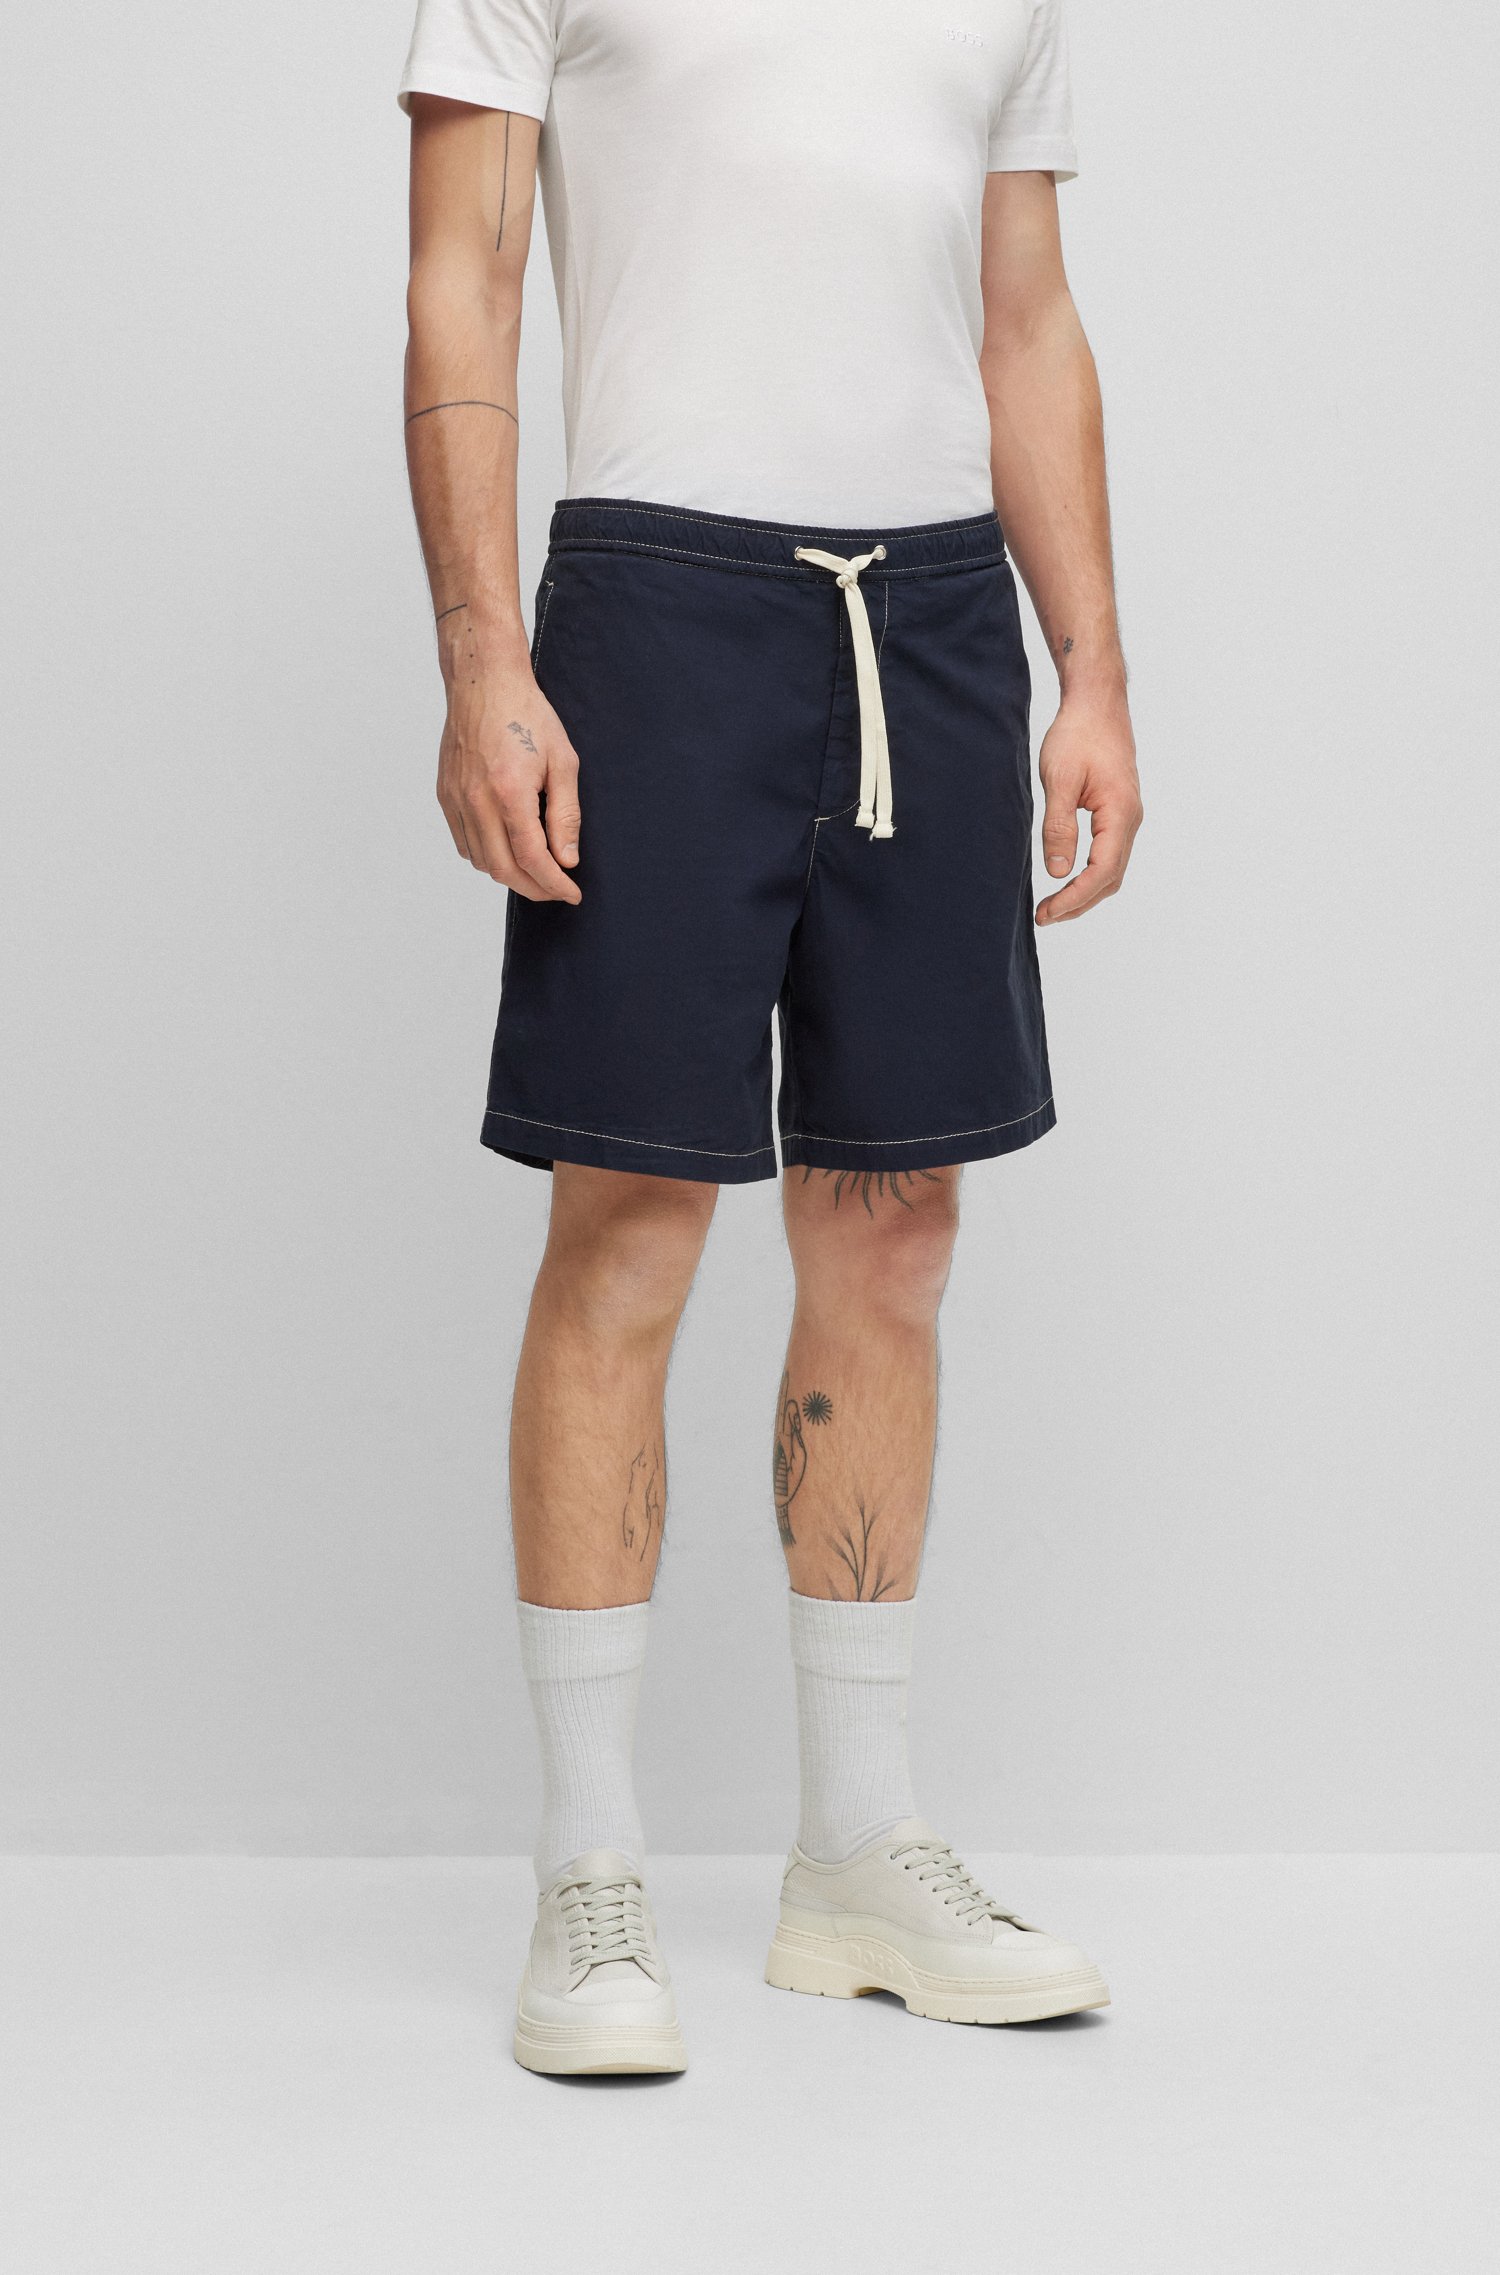 Shorts regular fit de algodón elástico con tacto papel